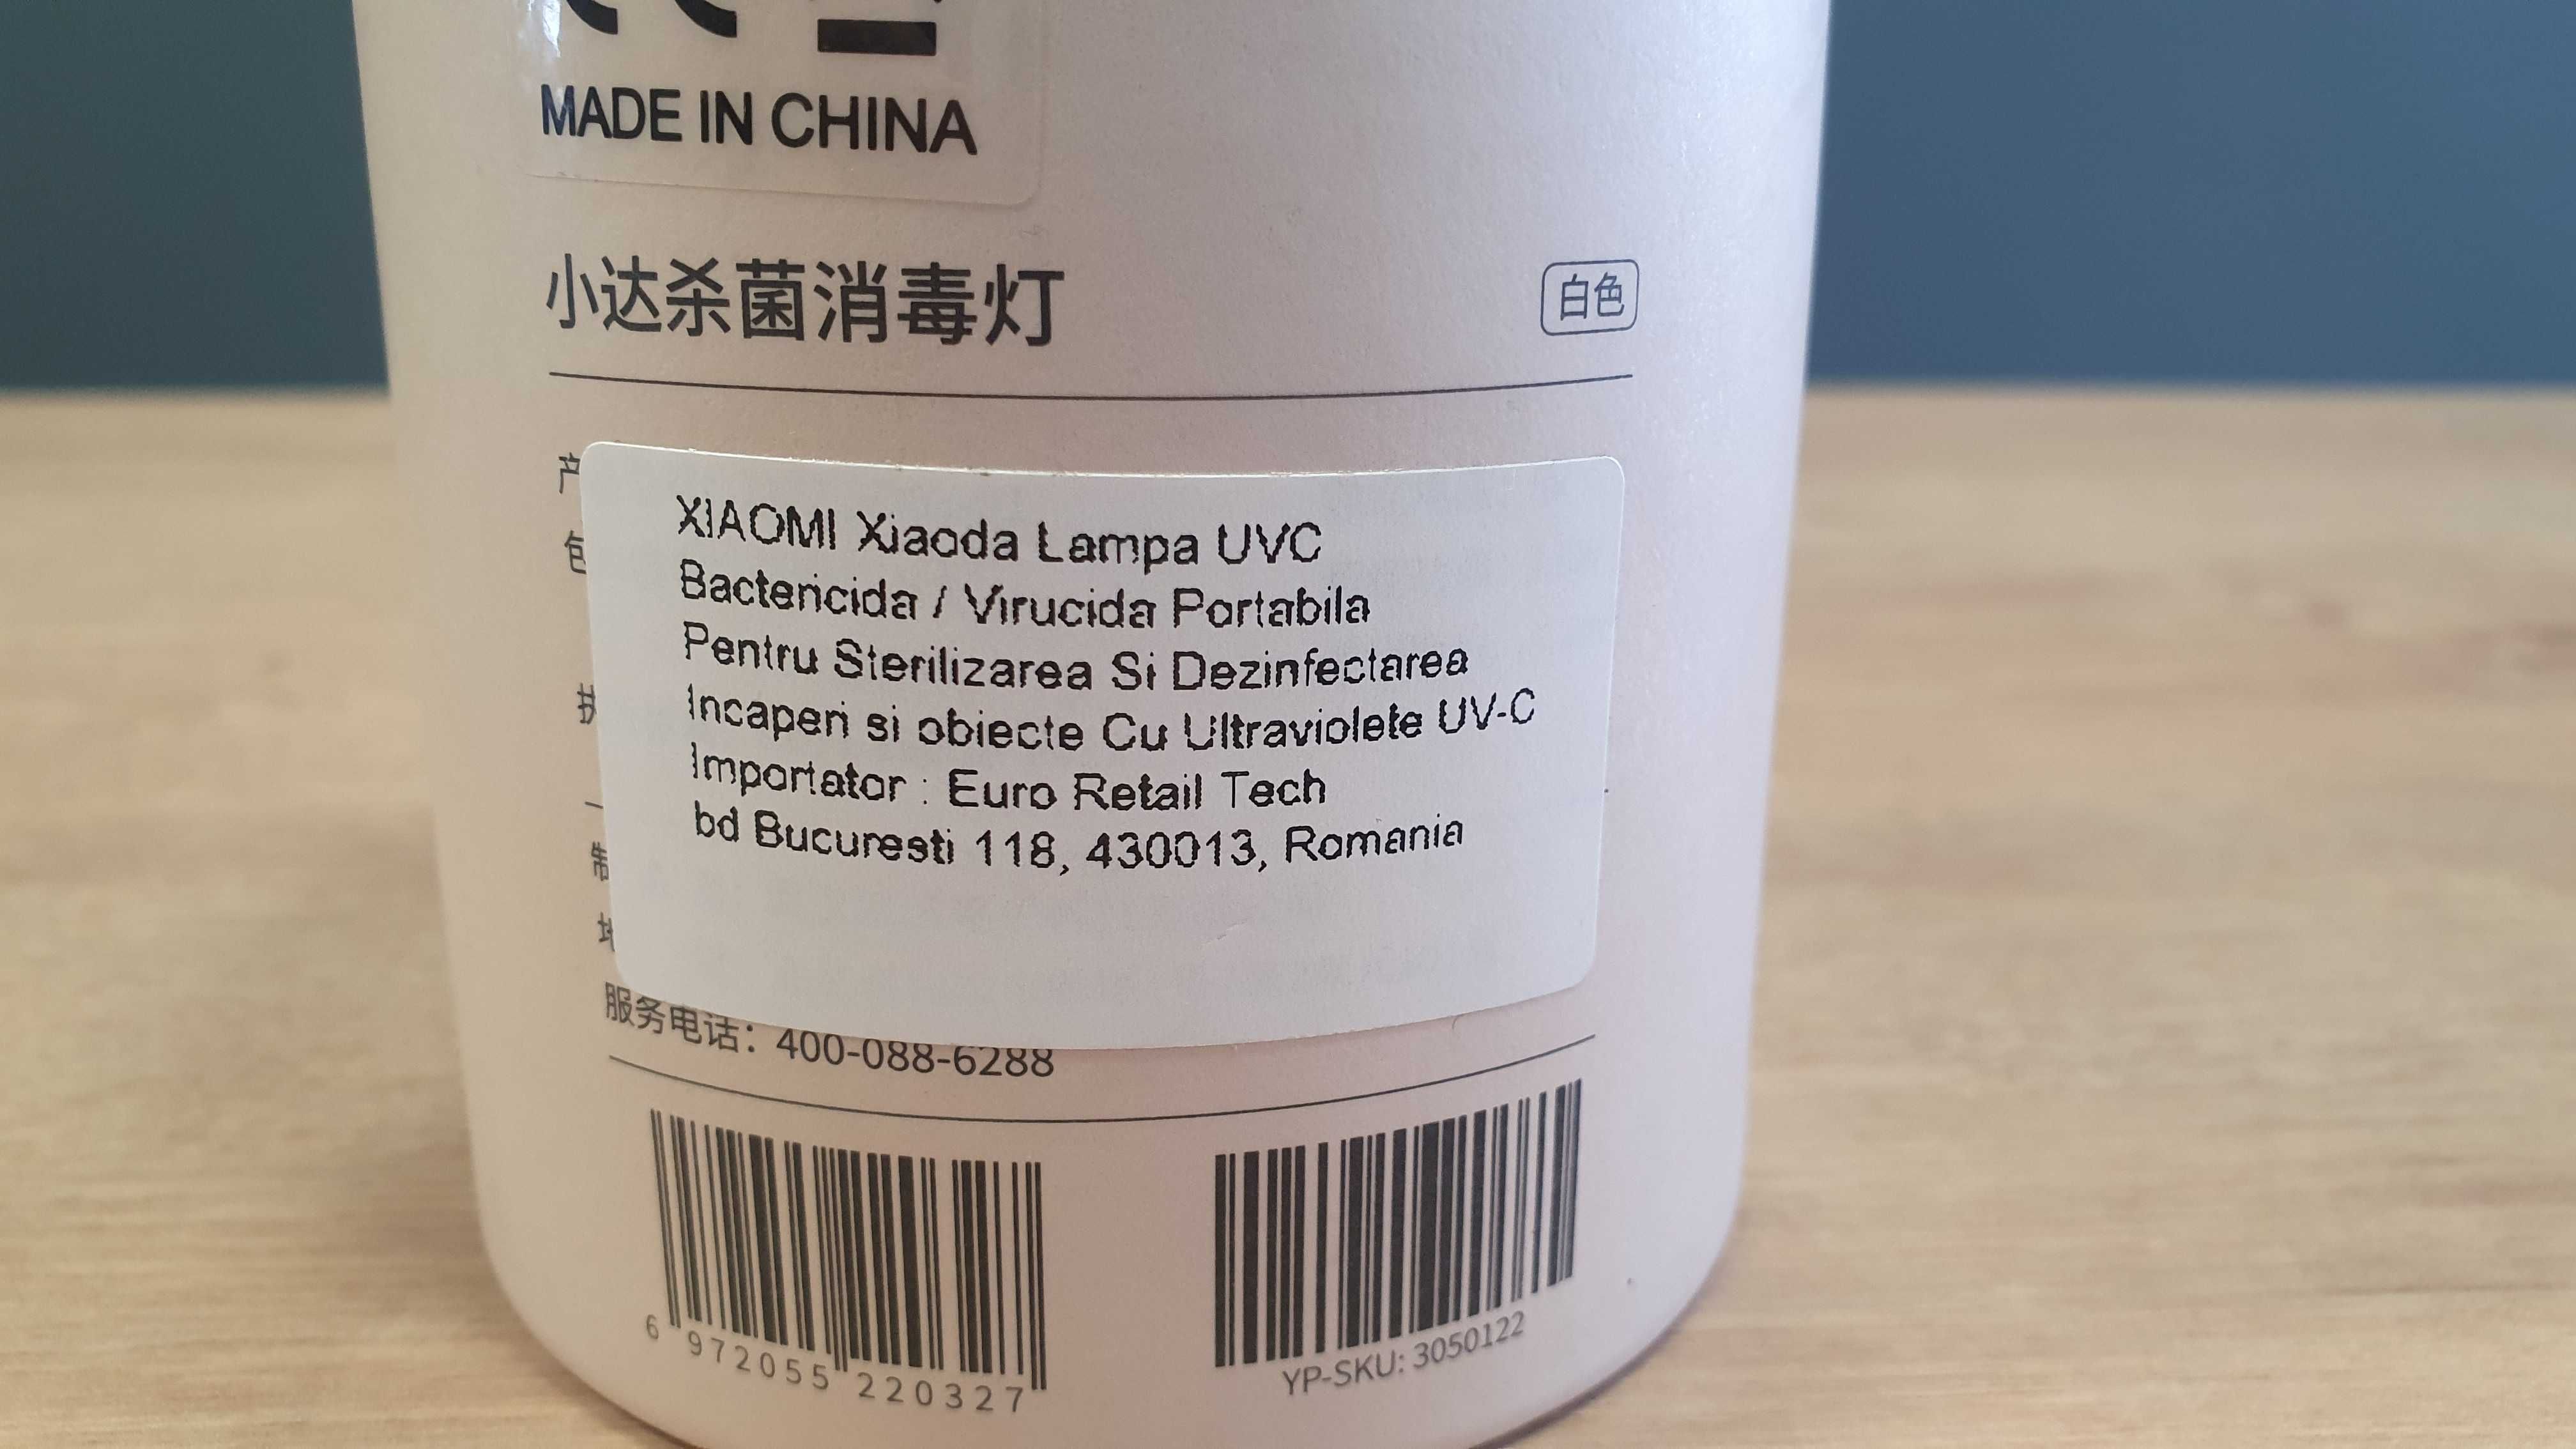 Xiaomi Xiaoda lampa UVC